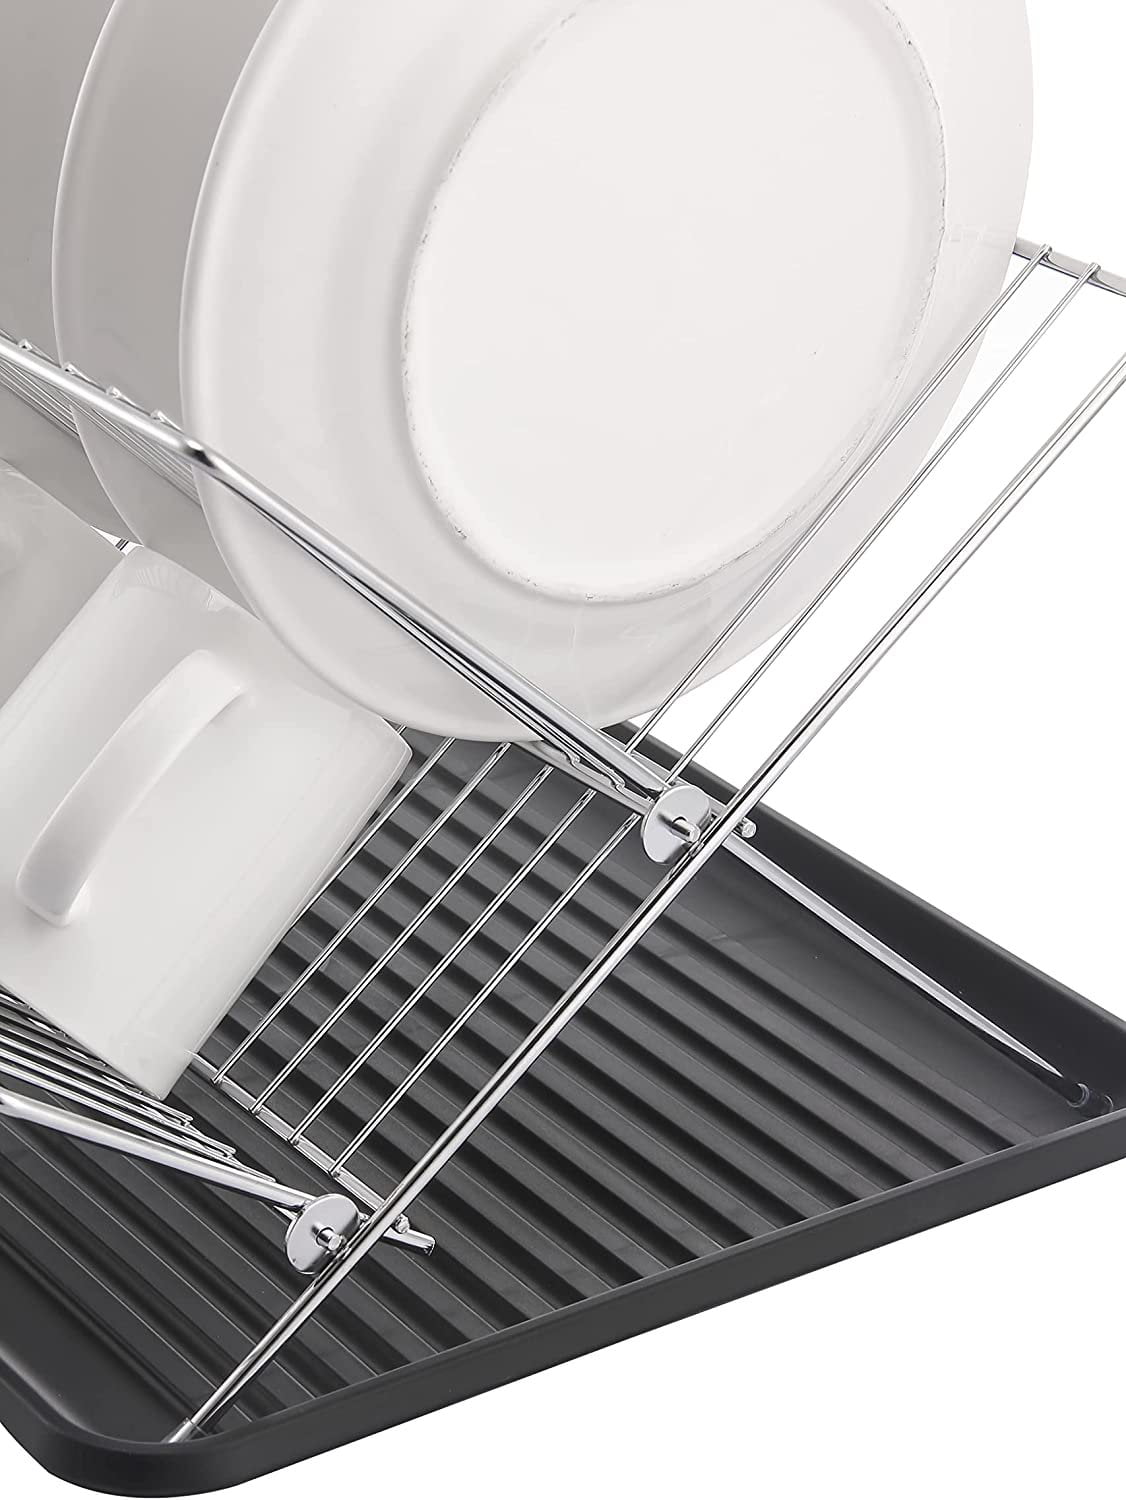 FNDDR03 Stainless Steel Foldable Dish Drying Rack Multipurpose